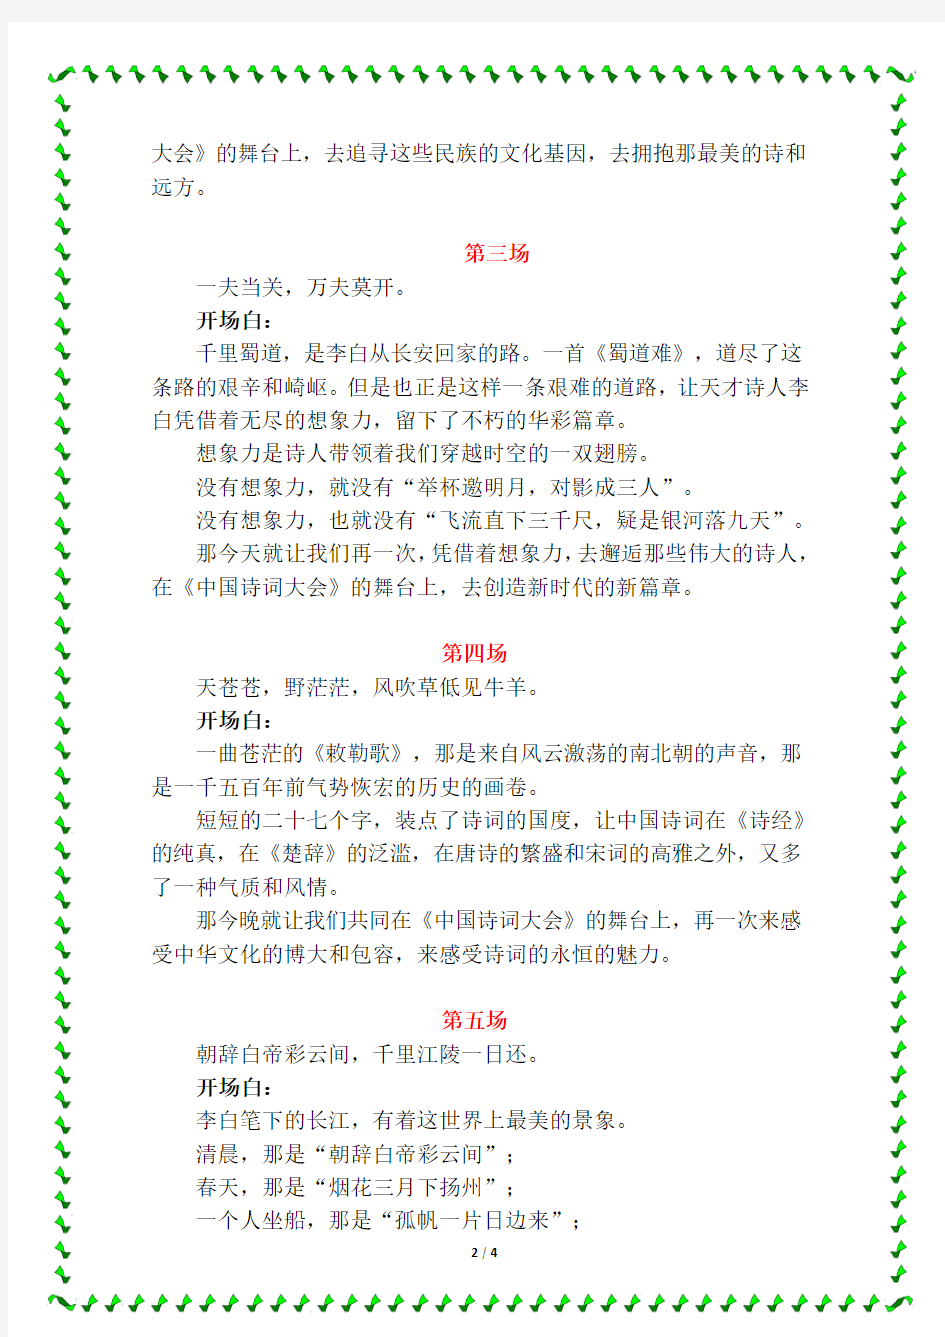 《中国诗词大会3》1-10期开场白完整版